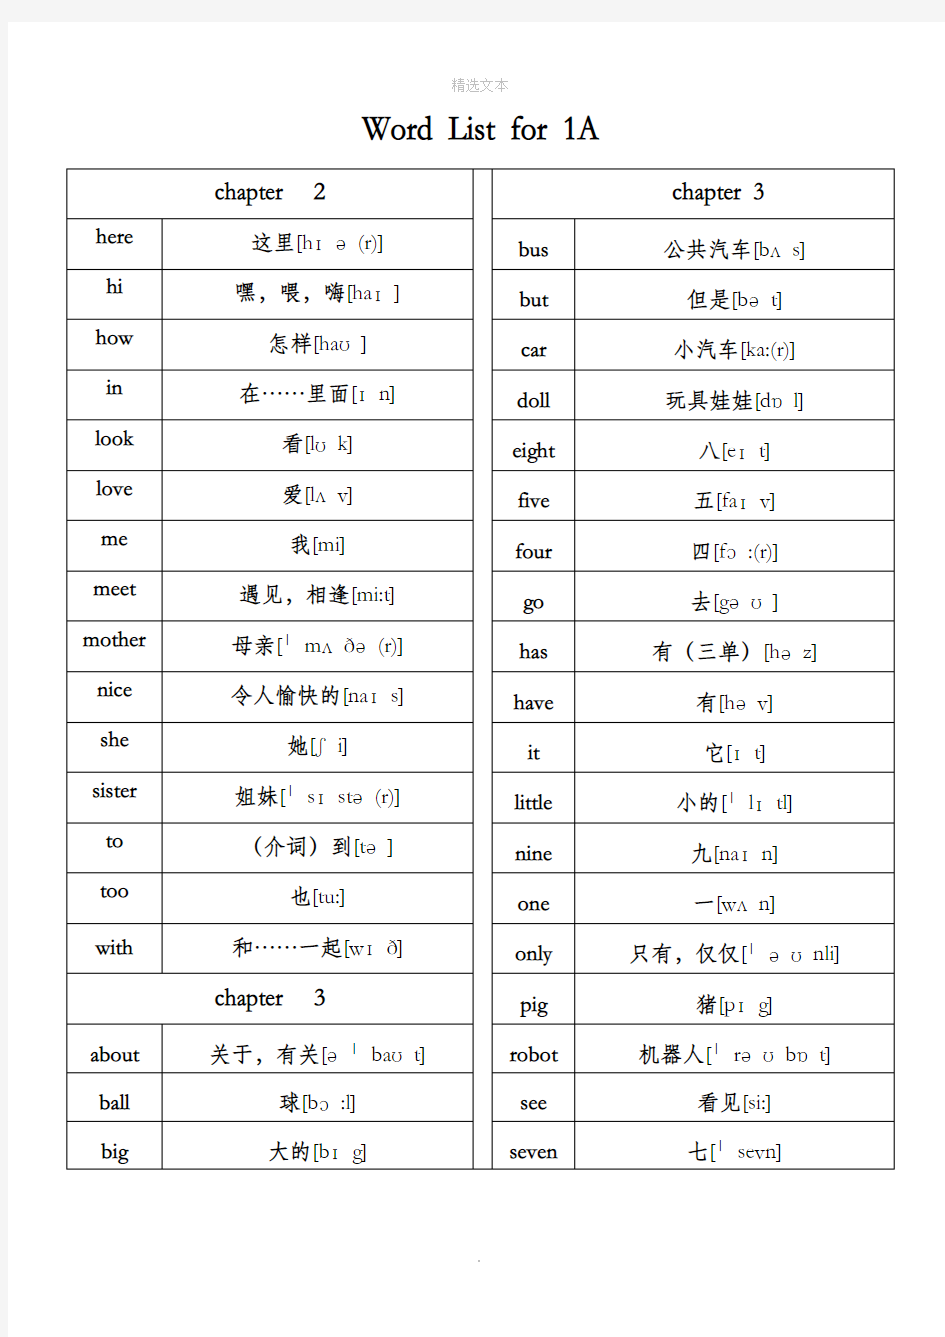 新版香港朗文1A-6B全部单词汇总(音标版)